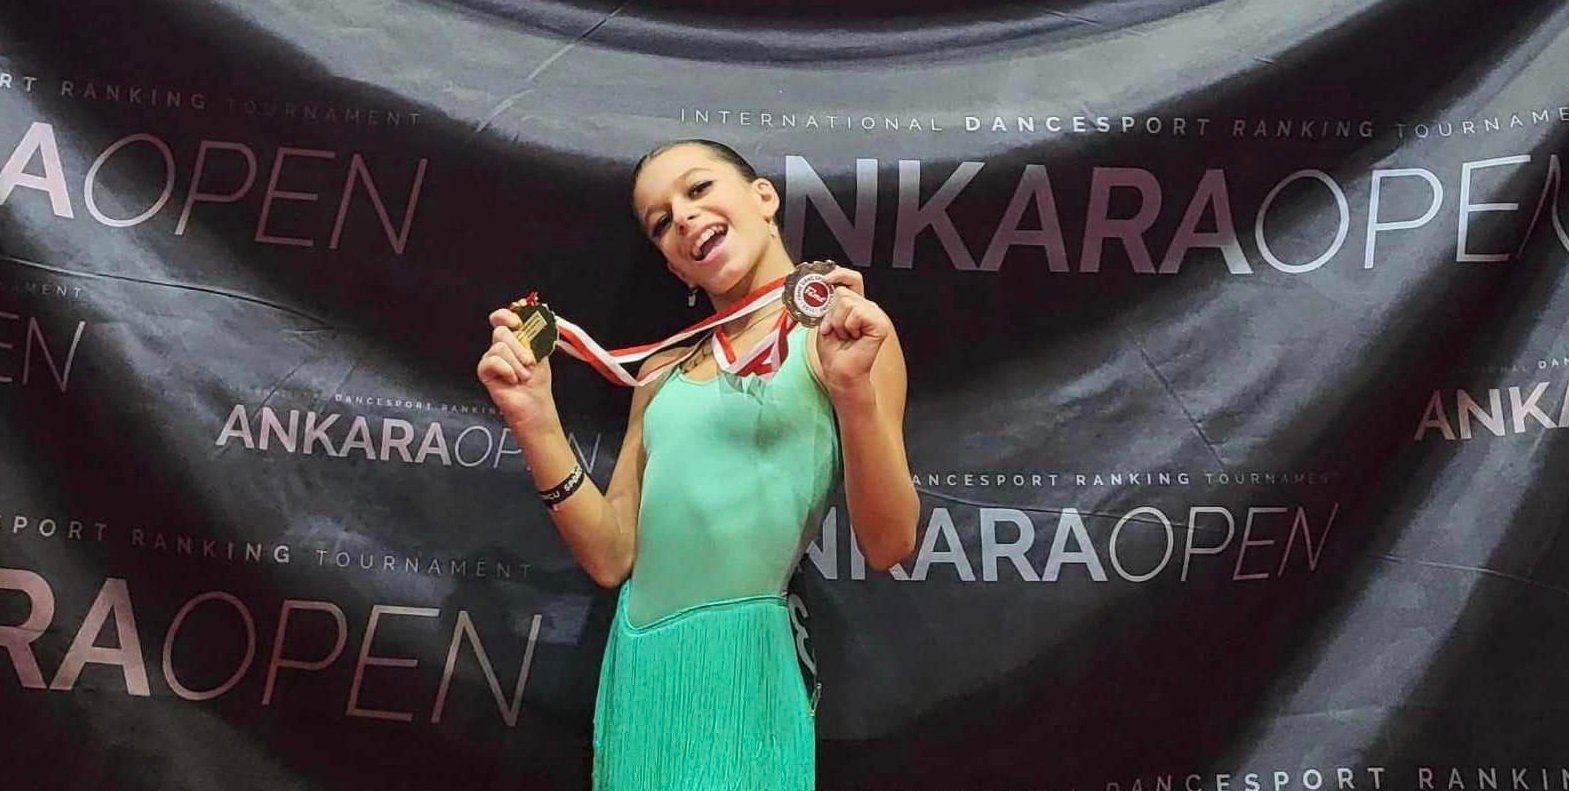 ქუთაისელმა თეკლა გაბელაშვილმა თურქეთში, კონკურსზე, ერთ-ერთი ცეკვის კატეგორიაში პირველი ადგილი დაიკავა